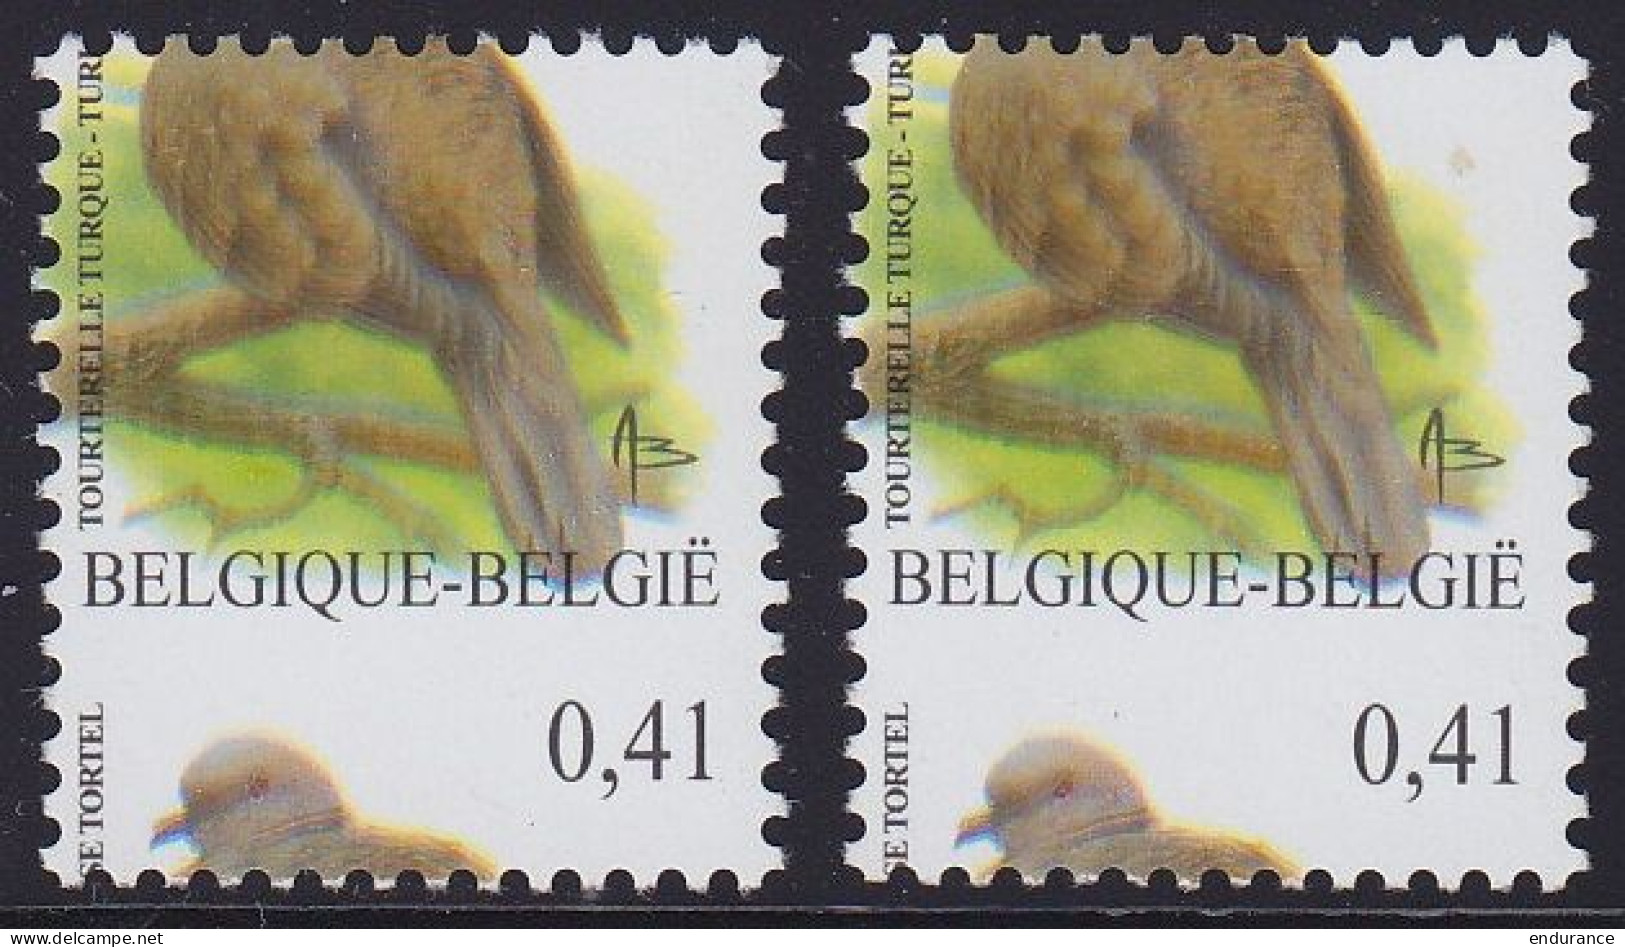 N°3135 ** Oiseau De Buzin 0,41€ Tourterelle Turque - 2x Curiosités : Double Impression, Curiosités De Couleur Et Piquage - 1985-.. Vogels (Buzin)